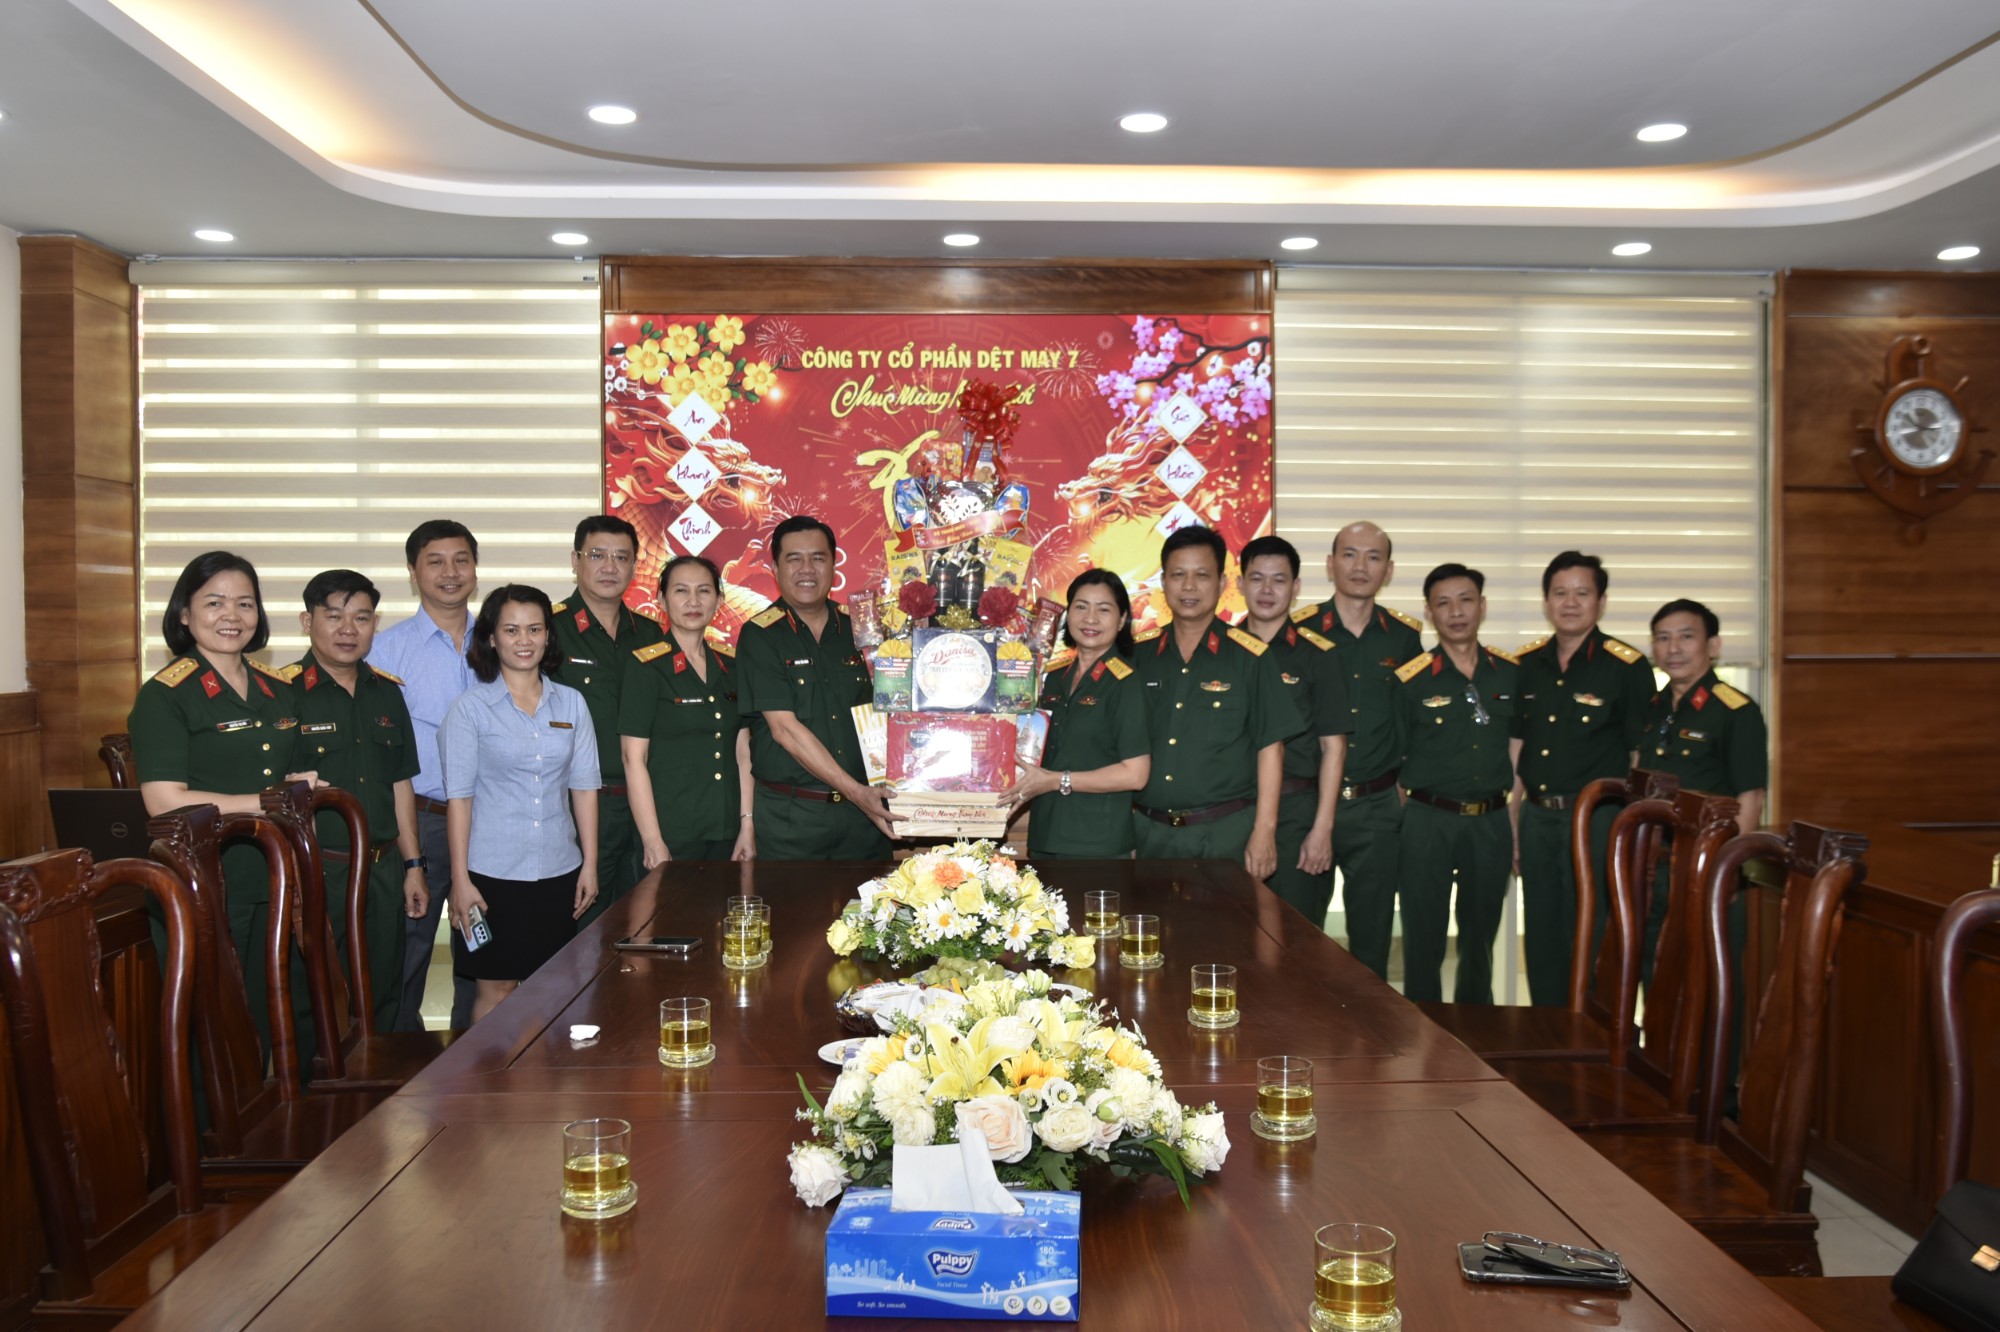 Thủ trưởng Huỳnh Tấn Hùng - BTM/TCHC ghé thăm và chúc tết CB, CNV Công ty Dệt May 7